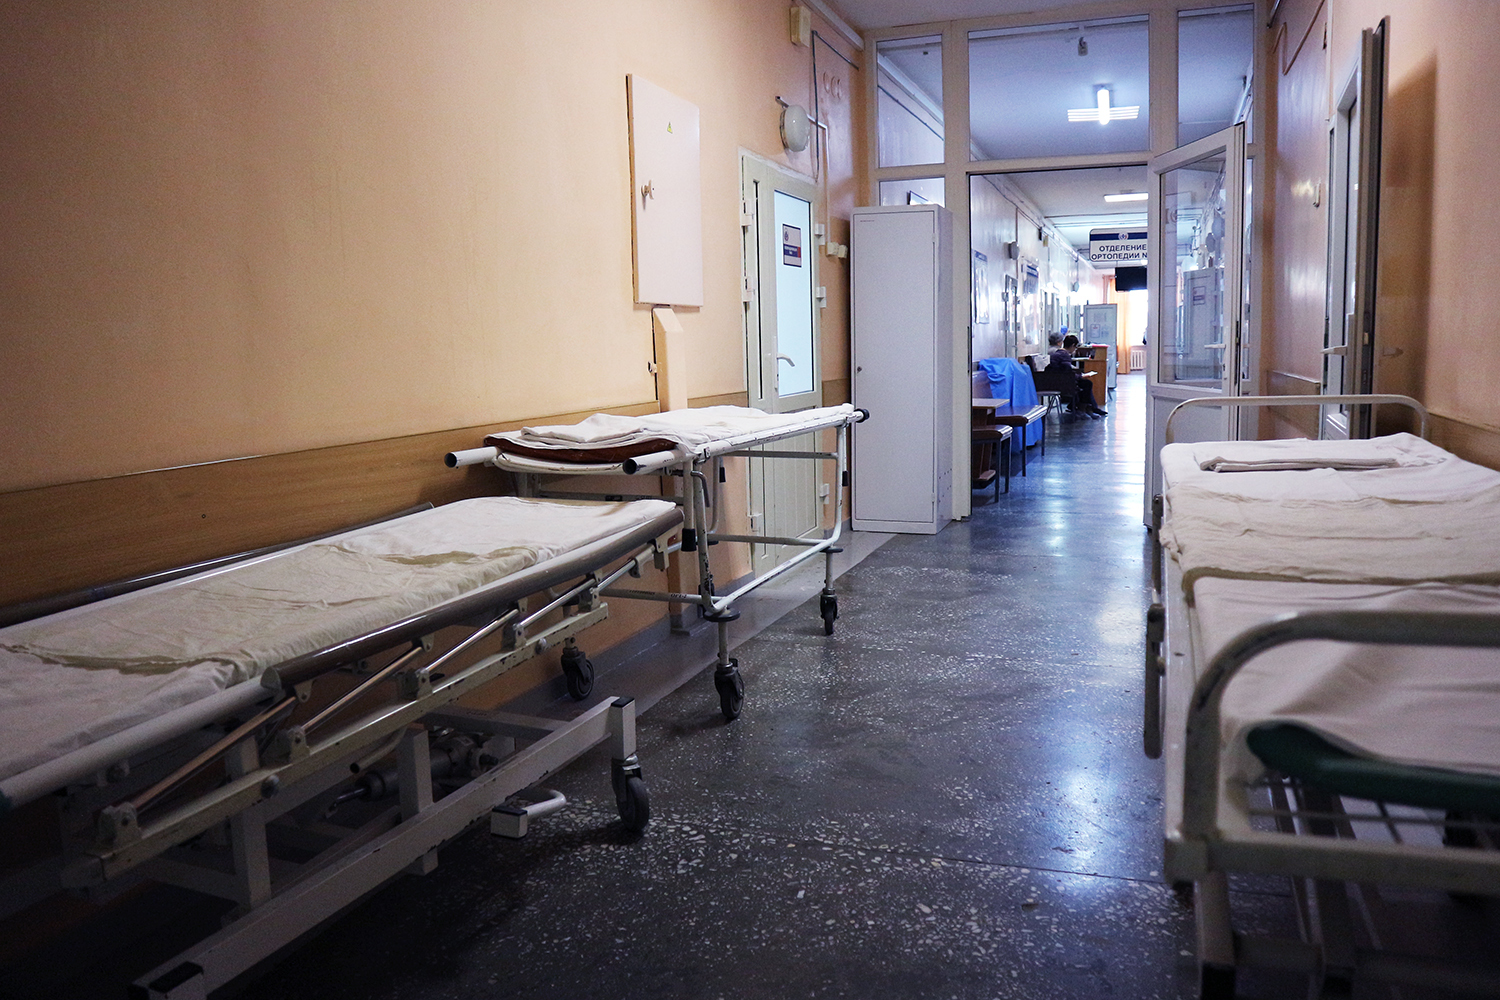 Убитые горем родители отсудили у врачей Камчатки 4,5 миллиона за умершую дочь